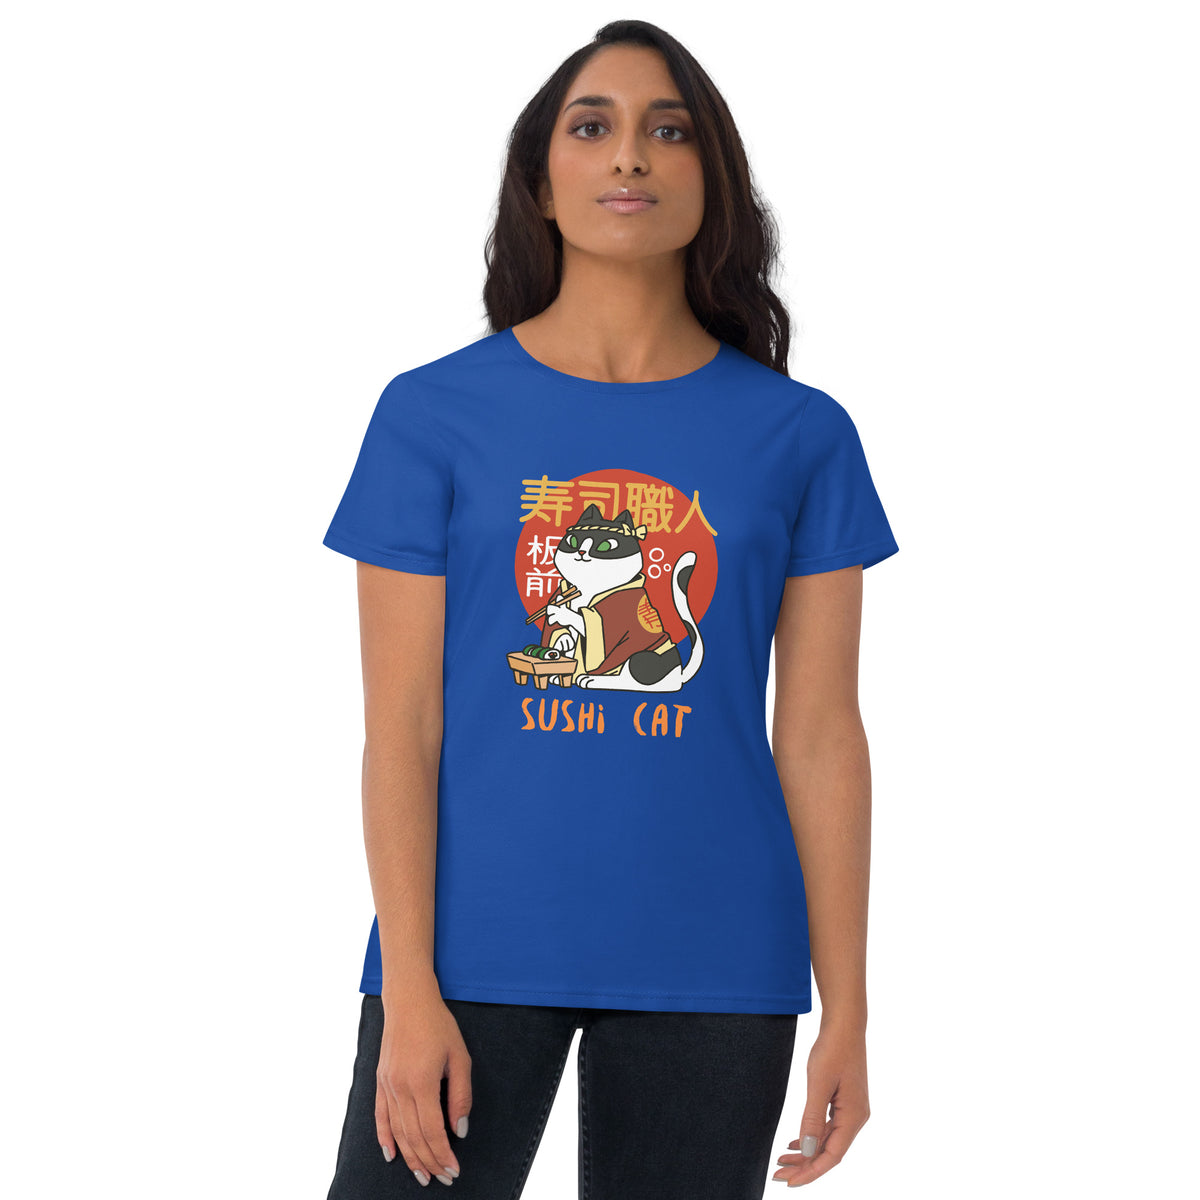 Sushi Cat Women's Short Sleeve T-Shirt